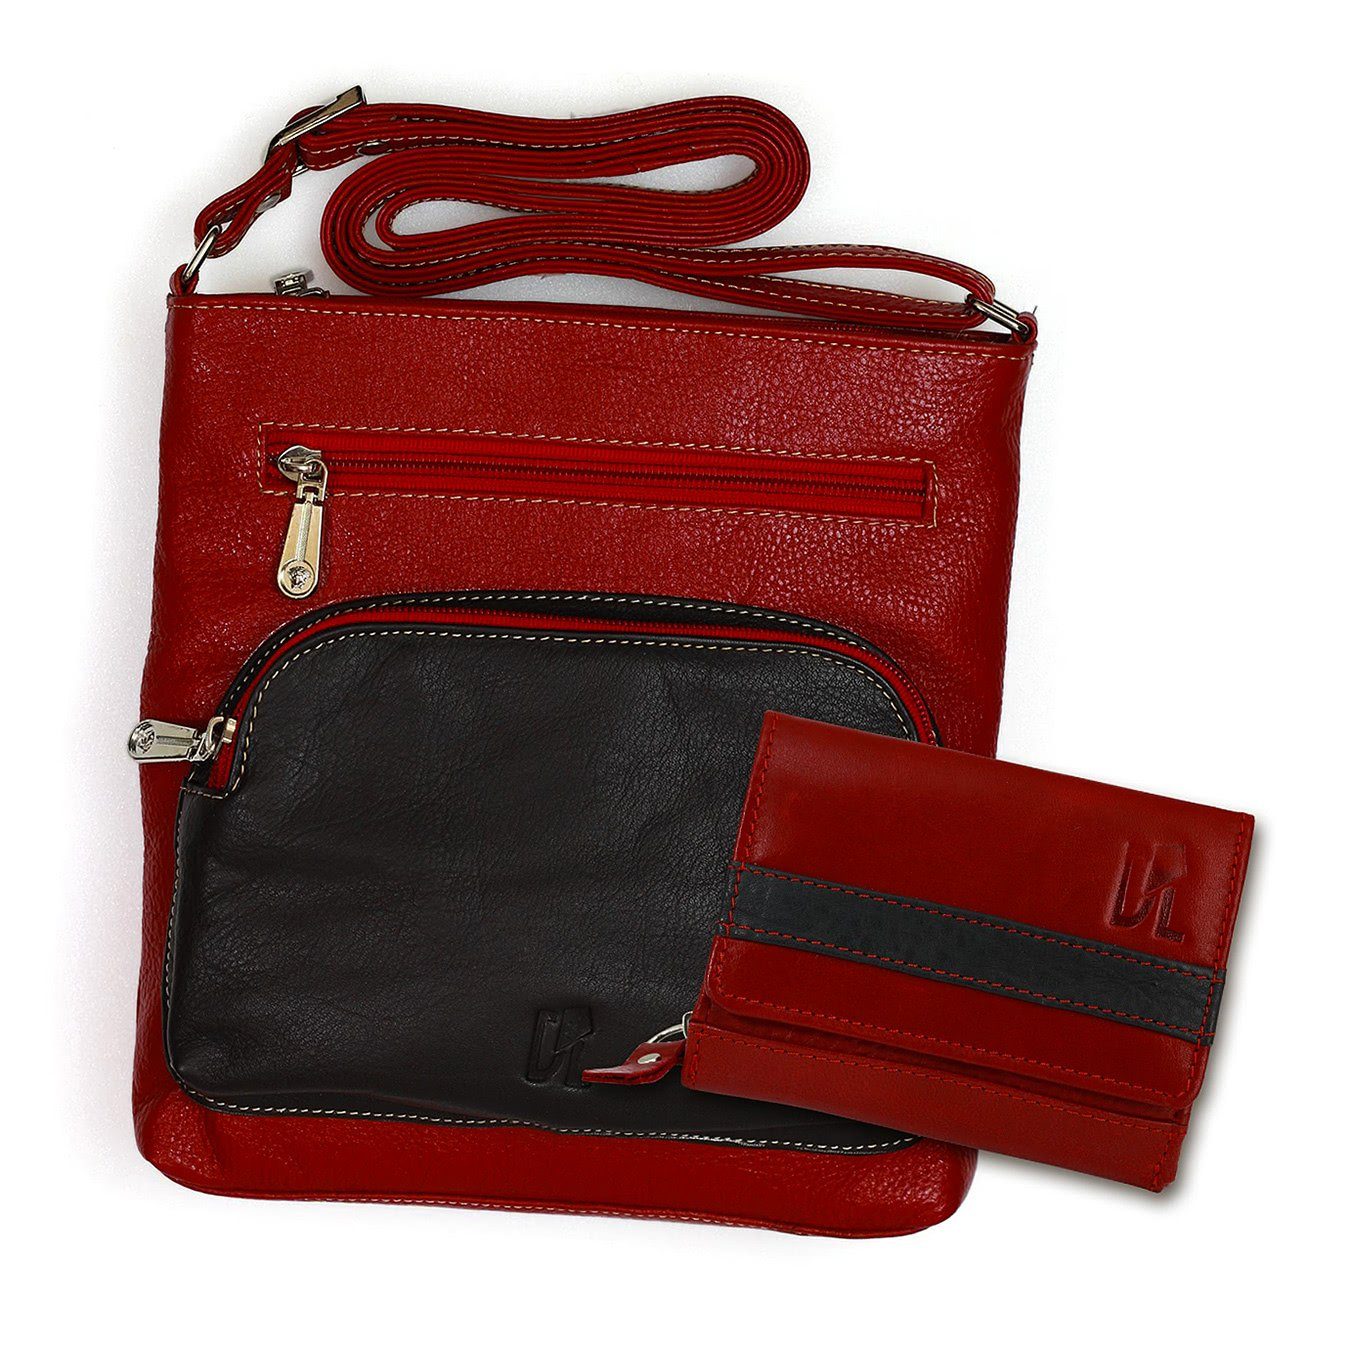 DrachenLeder Handtasche + Geldbörse Geldbörse Umhängetasche rot, 2-tlg), Leder rot Set Handtasche, schwarz (Handtasche, Echtleder